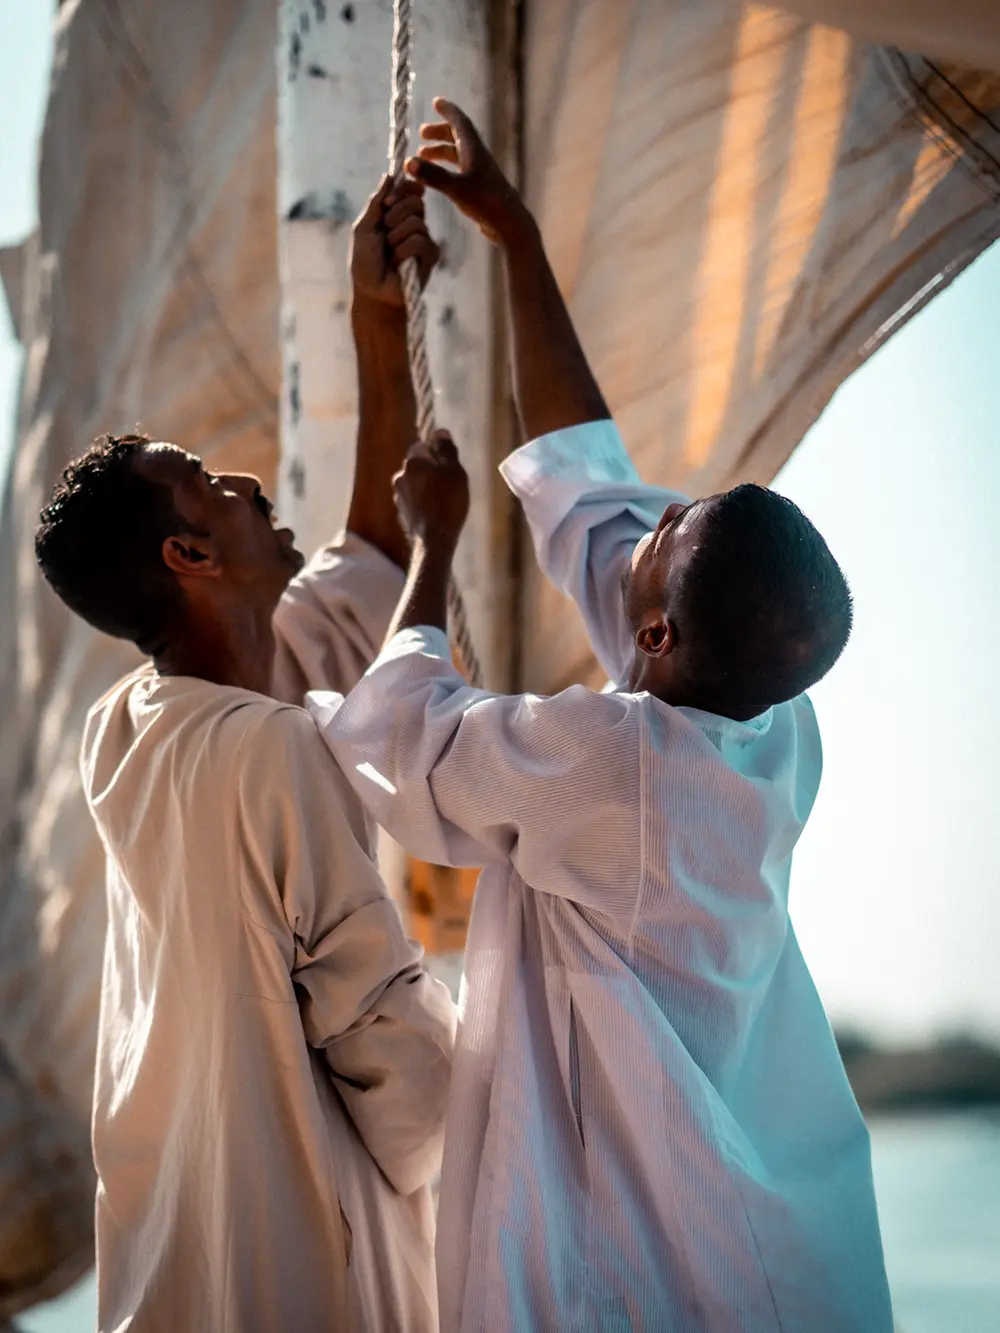 Egyptian sailors